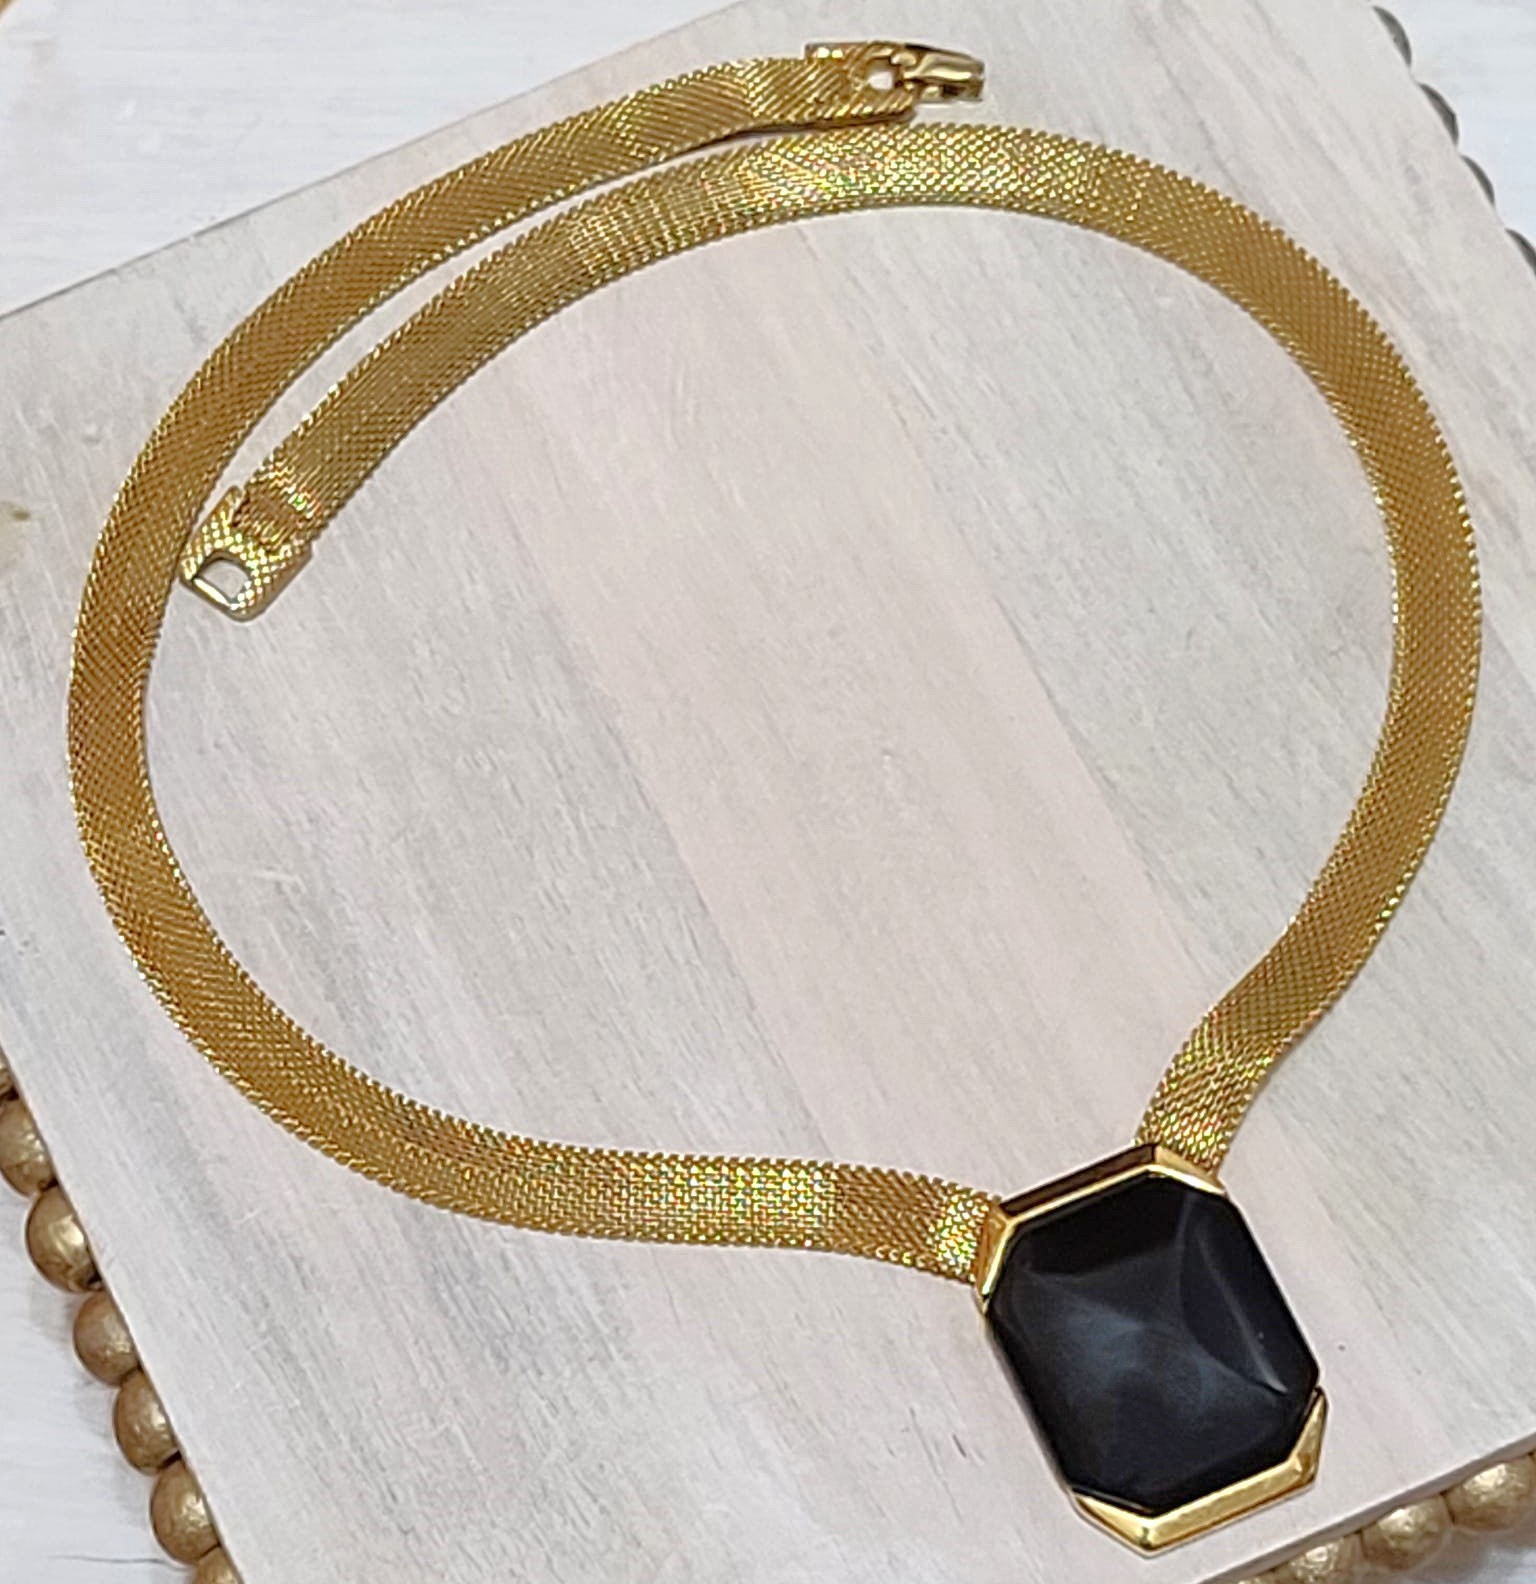 Crown Trifari necklace, vintage, center black cabachon gold mesh